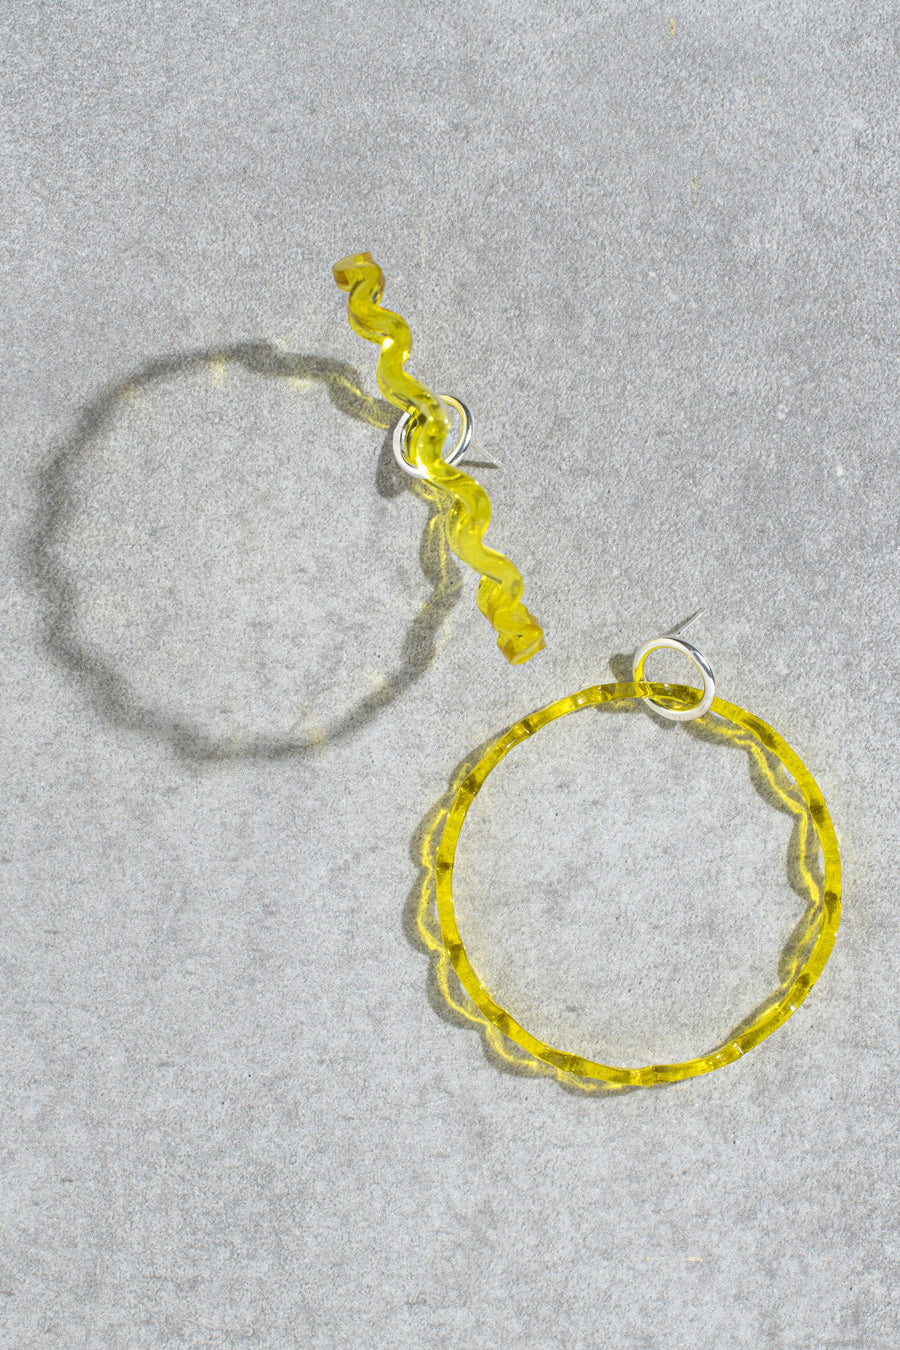 Amy earrings - yellow chevron